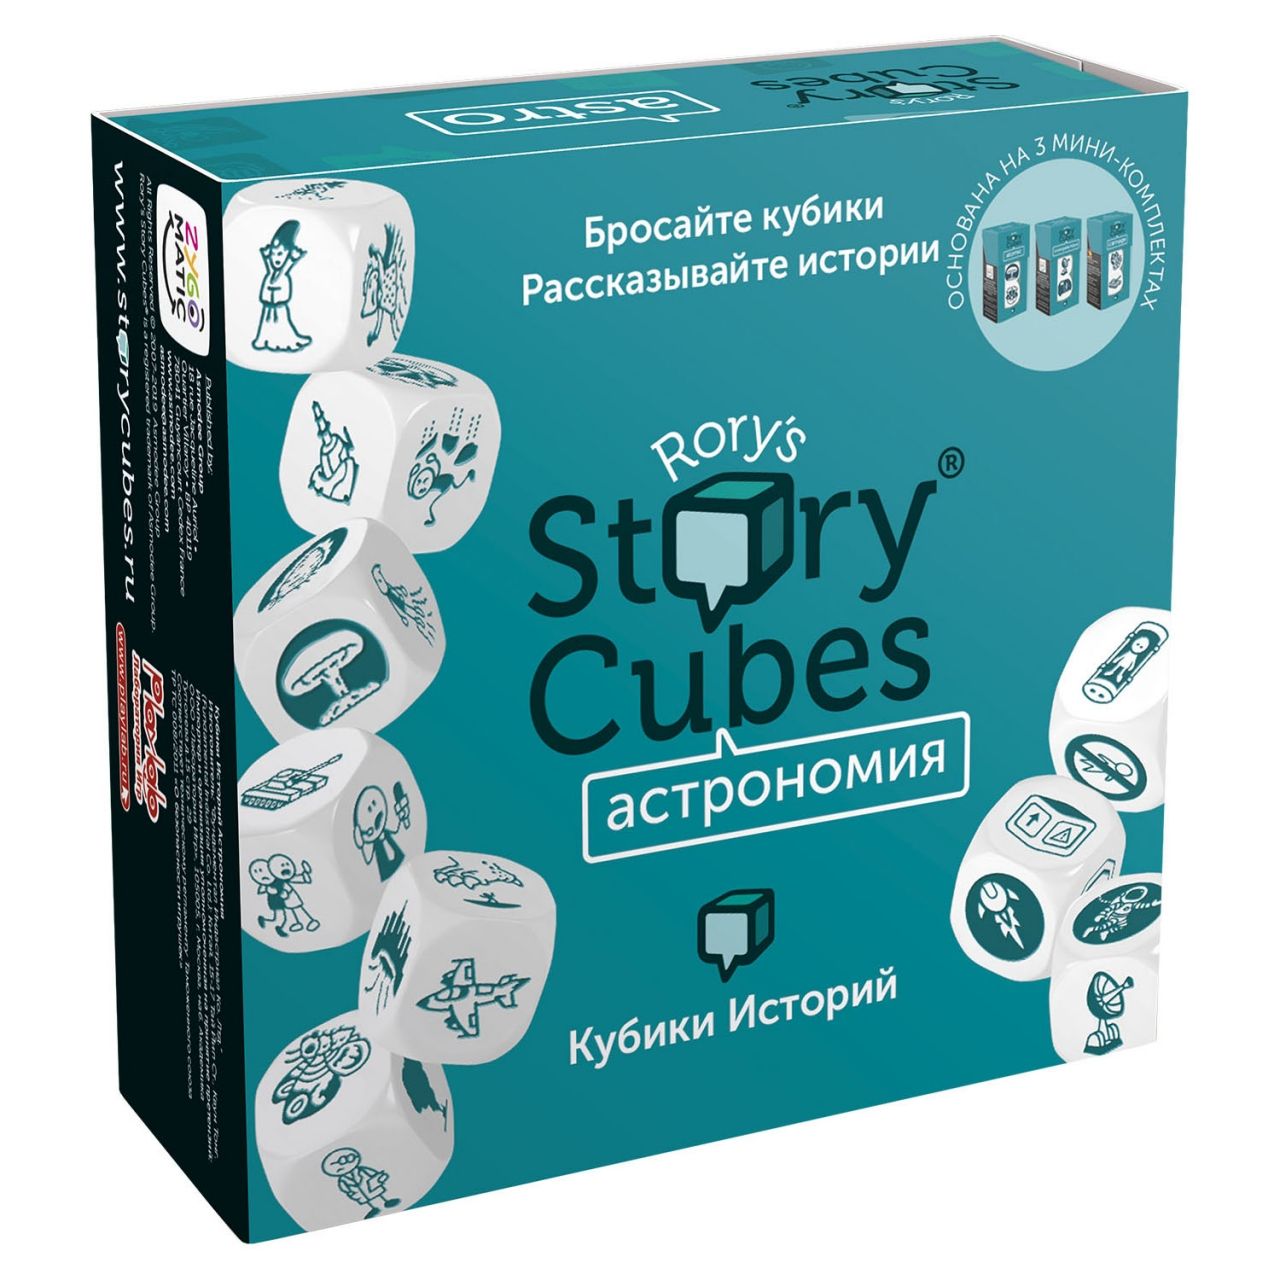 Настольная игра RORYS STORY CUBES RSC31 кубики историй Астрономия настольная игра лаборатория игр rory s story cubes кубики историй космос 3 кубика